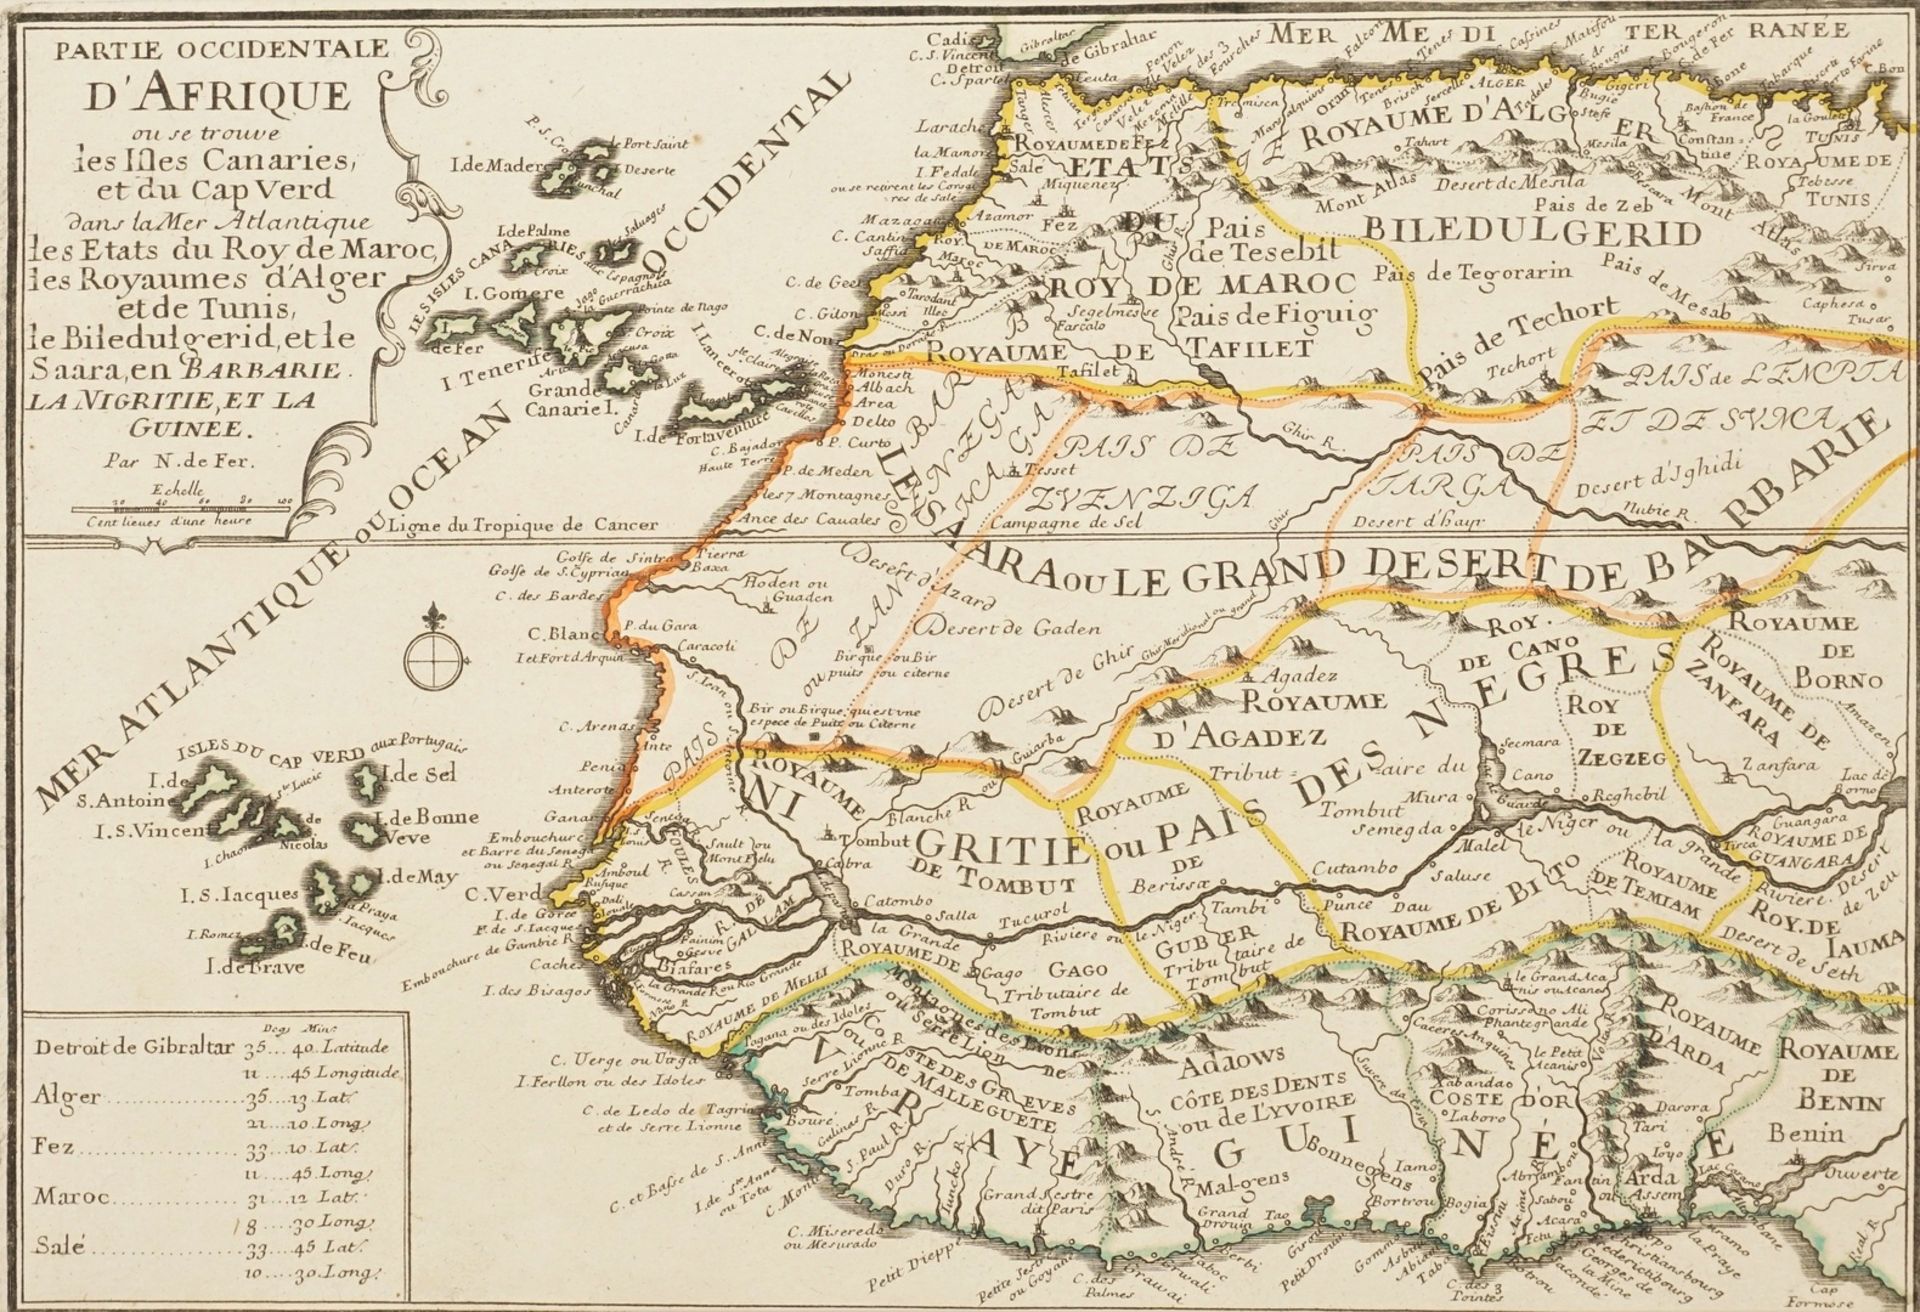 Nicolas de Fer, "Partie Occidentale d'Afrique" (Karte von Westafrika)